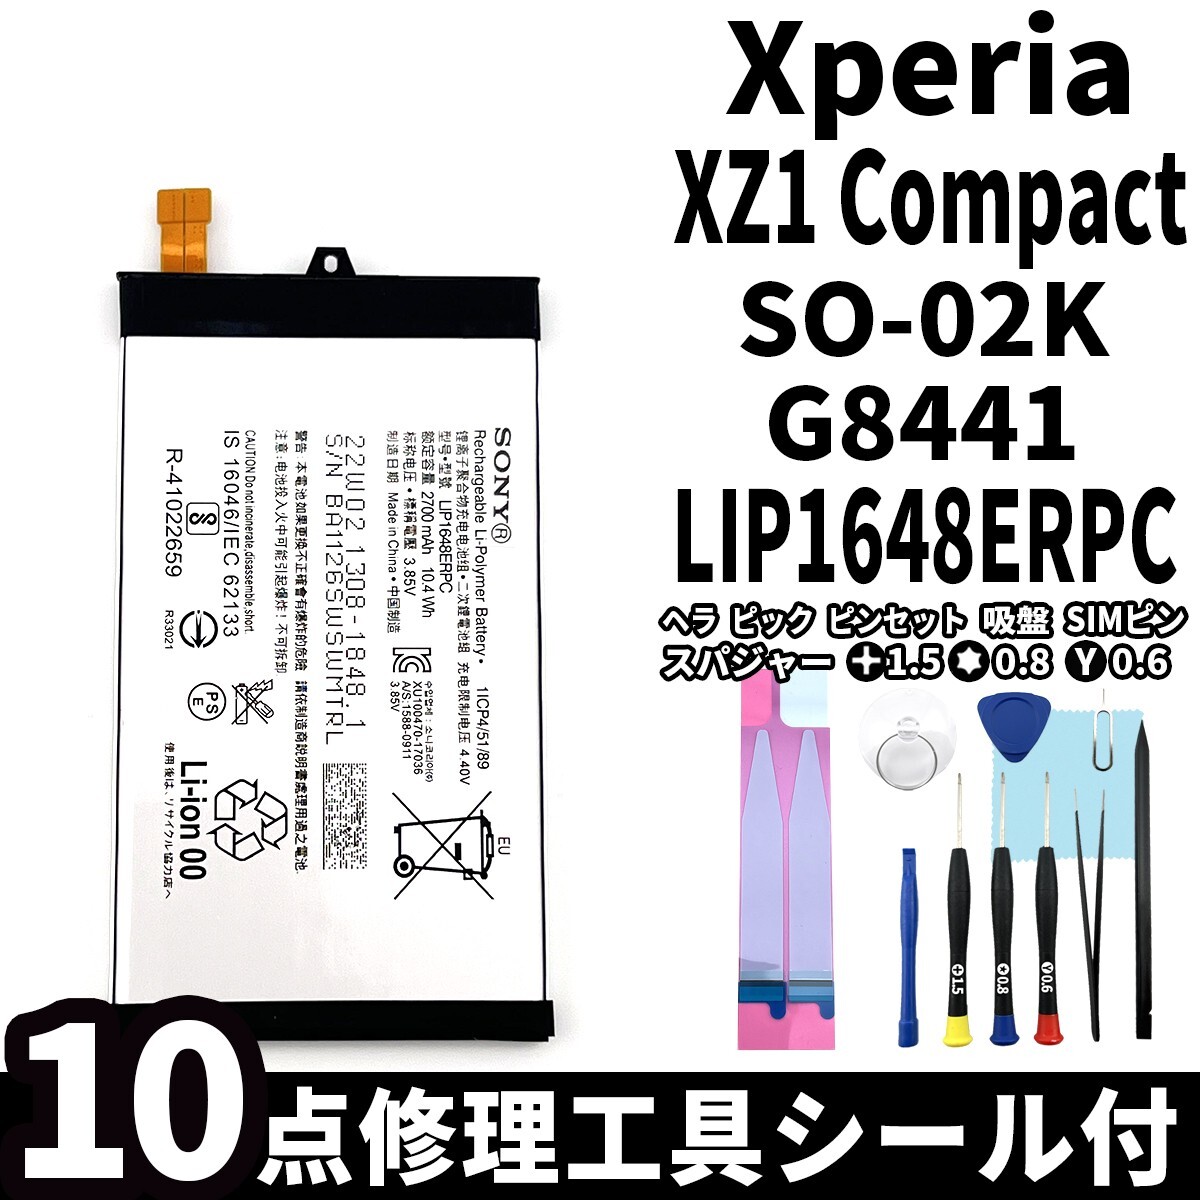 国内即日発送!純正同等新品! Xperia XZ1 Compact バッテリー LIP1648ERPC SO-02K G8441 電池パック交換 内蔵battery 両面テープ 工具付の画像1